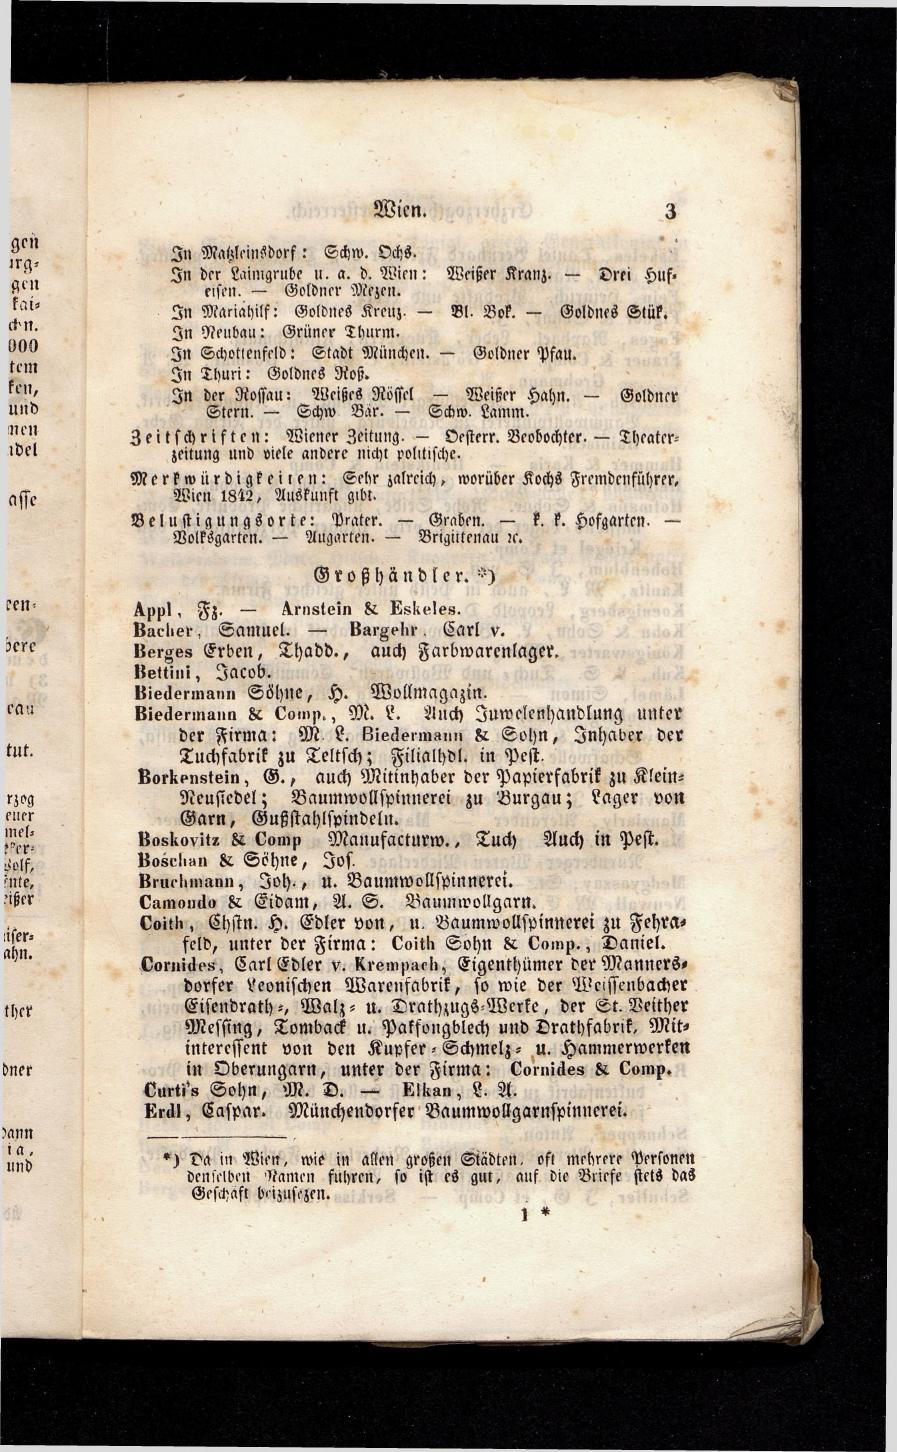 Grosses Adressbuch der Kaufleute. No. 13. Oesterreich ober u. unter der Enns 1844 - Seite 7